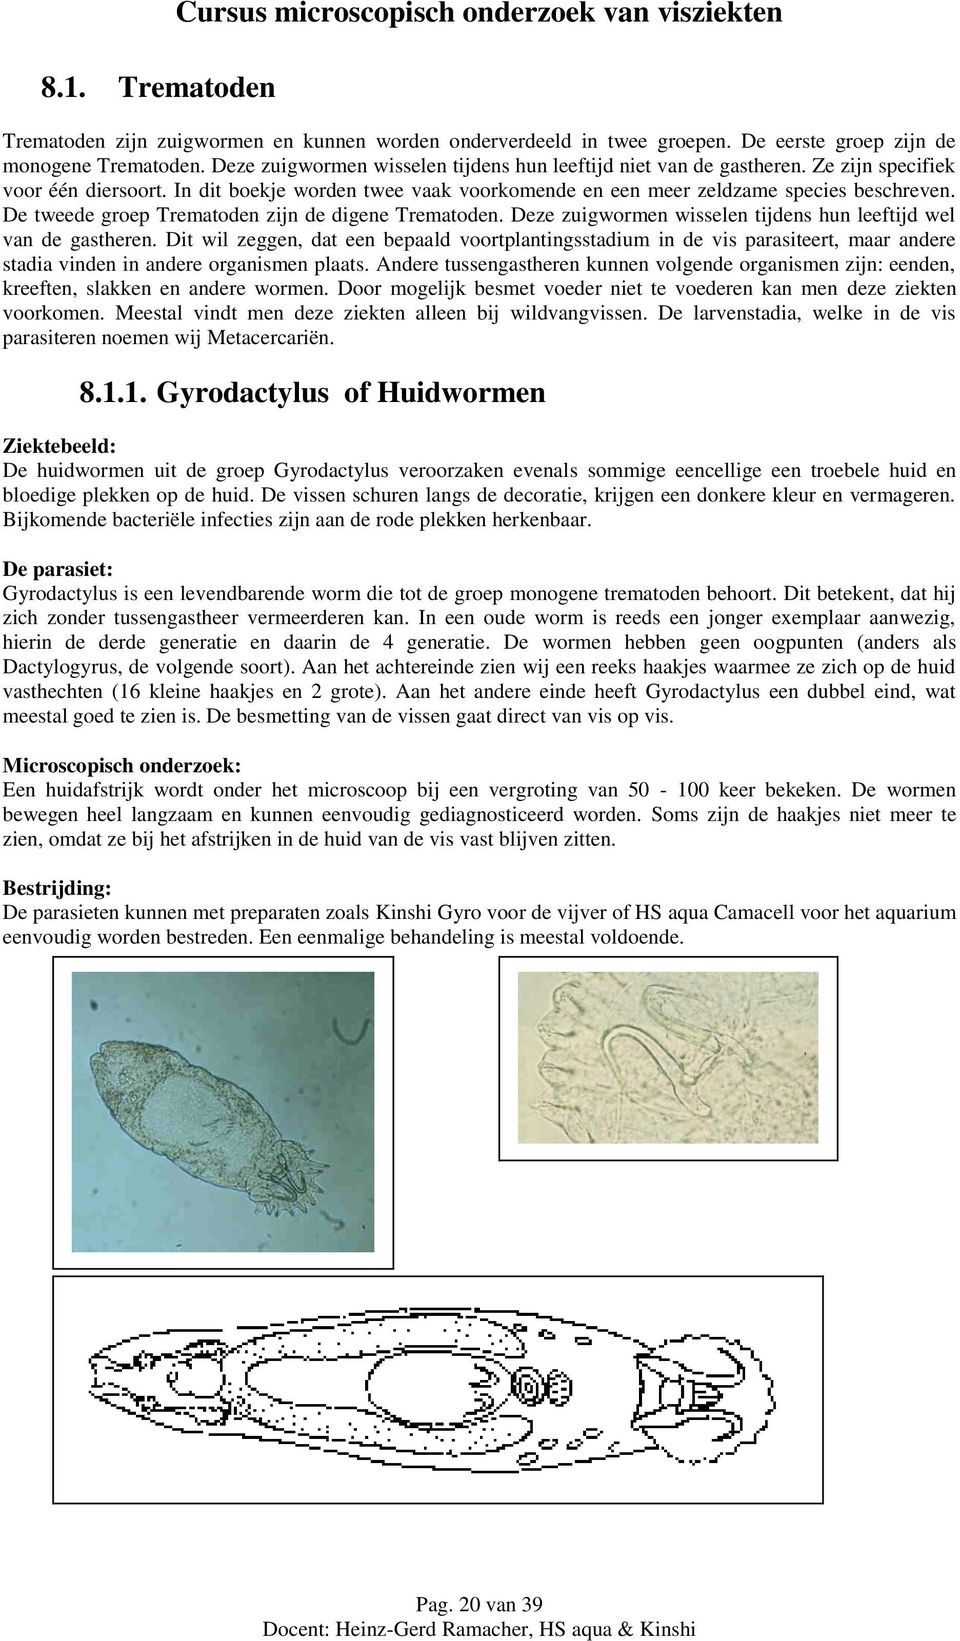 De tweede groep Trematoden zijn de digene Trematoden. Deze zuigwormen wisselen tijdens hun leeftijd wel van de gastheren.